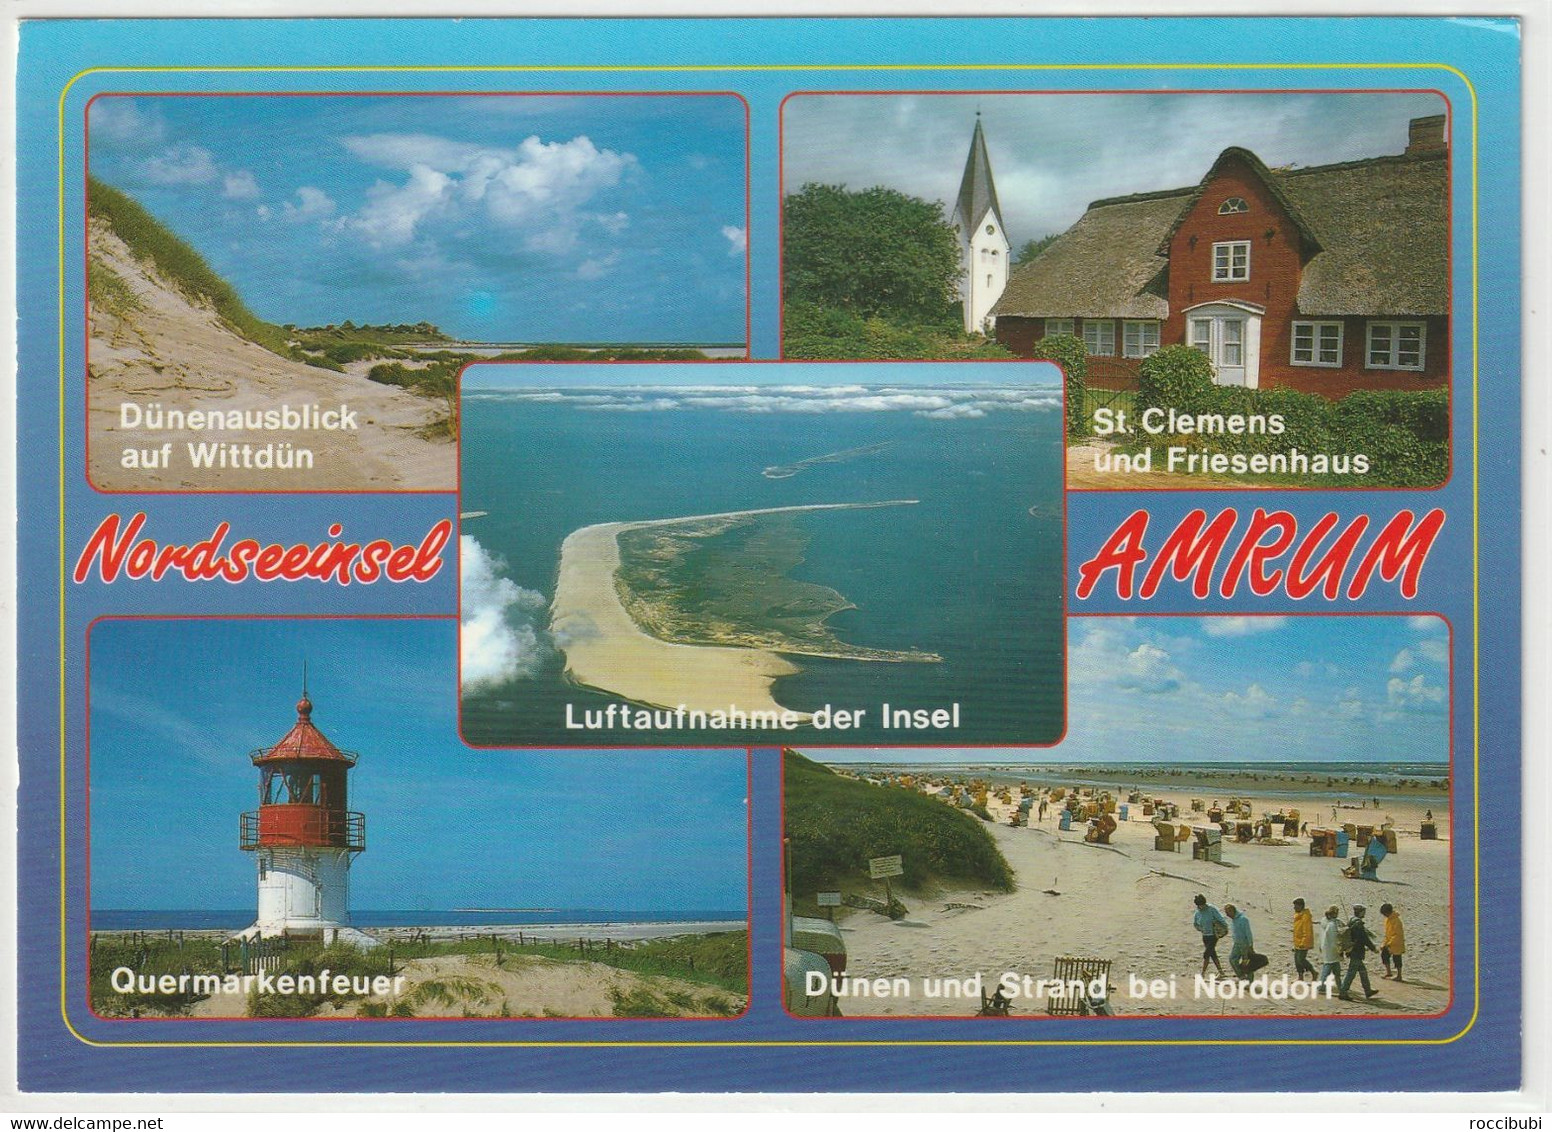 Amrum, Nordseeinsel, Nordfriesland, Schleswig-Holstein - Nordfriesland